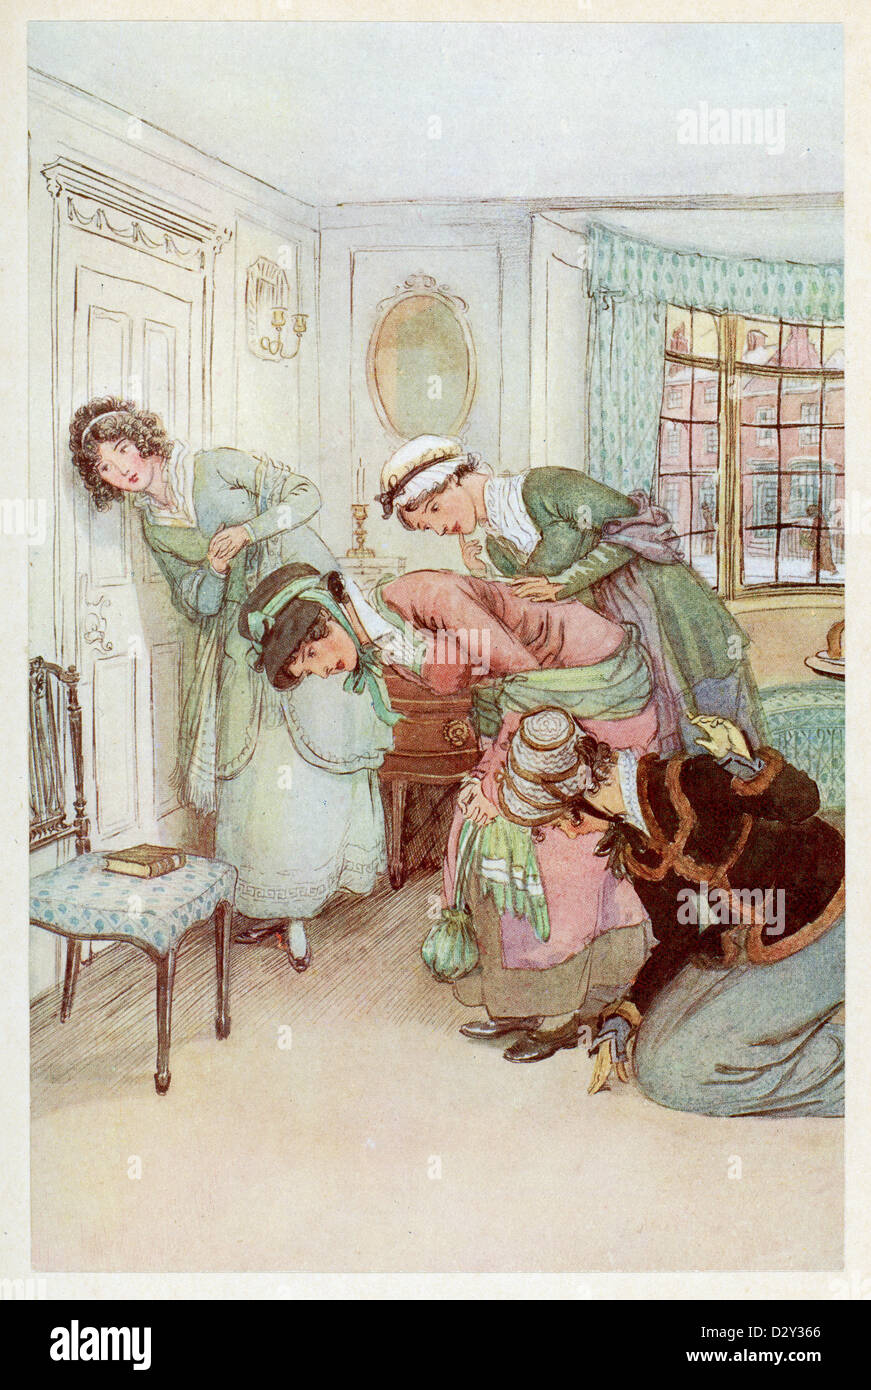 Abbildung aus dem J. M. Barrie Stück Quality Street, eine Komödie über zwei Schwestern, die eine Schule "für vornehme Kinder" beginnen. Stockfoto